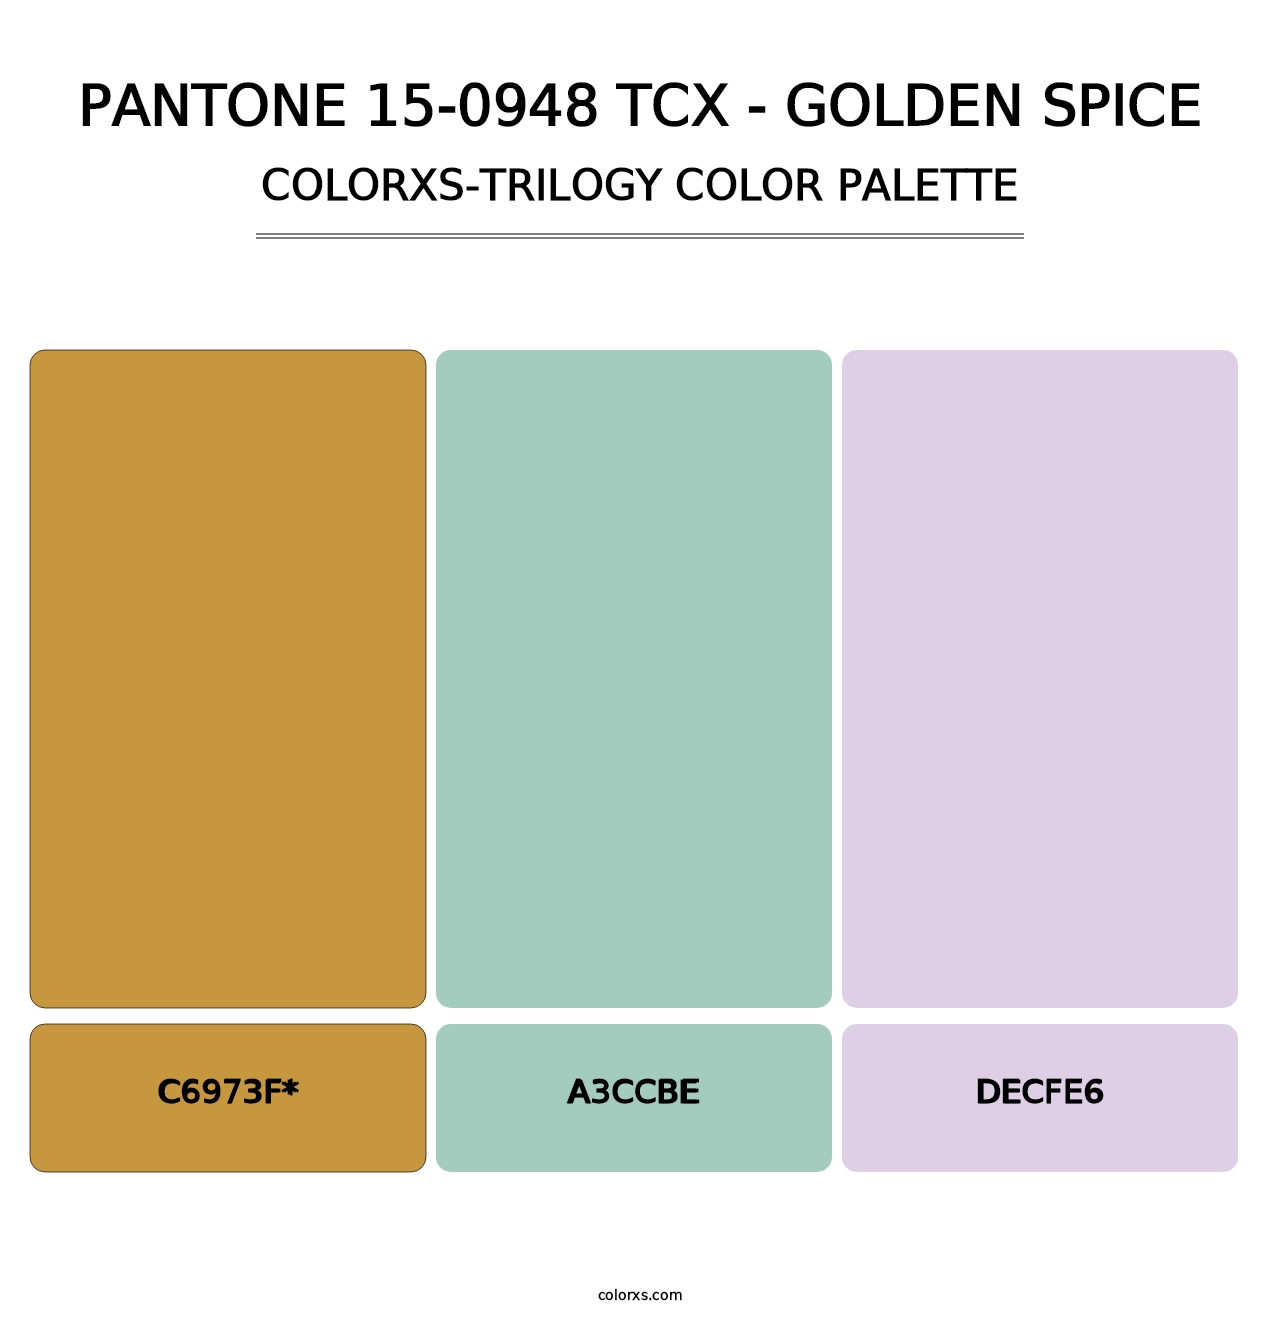 PANTONE 15-0948 TCX - Golden Spice - Colorxs Trilogy Palette